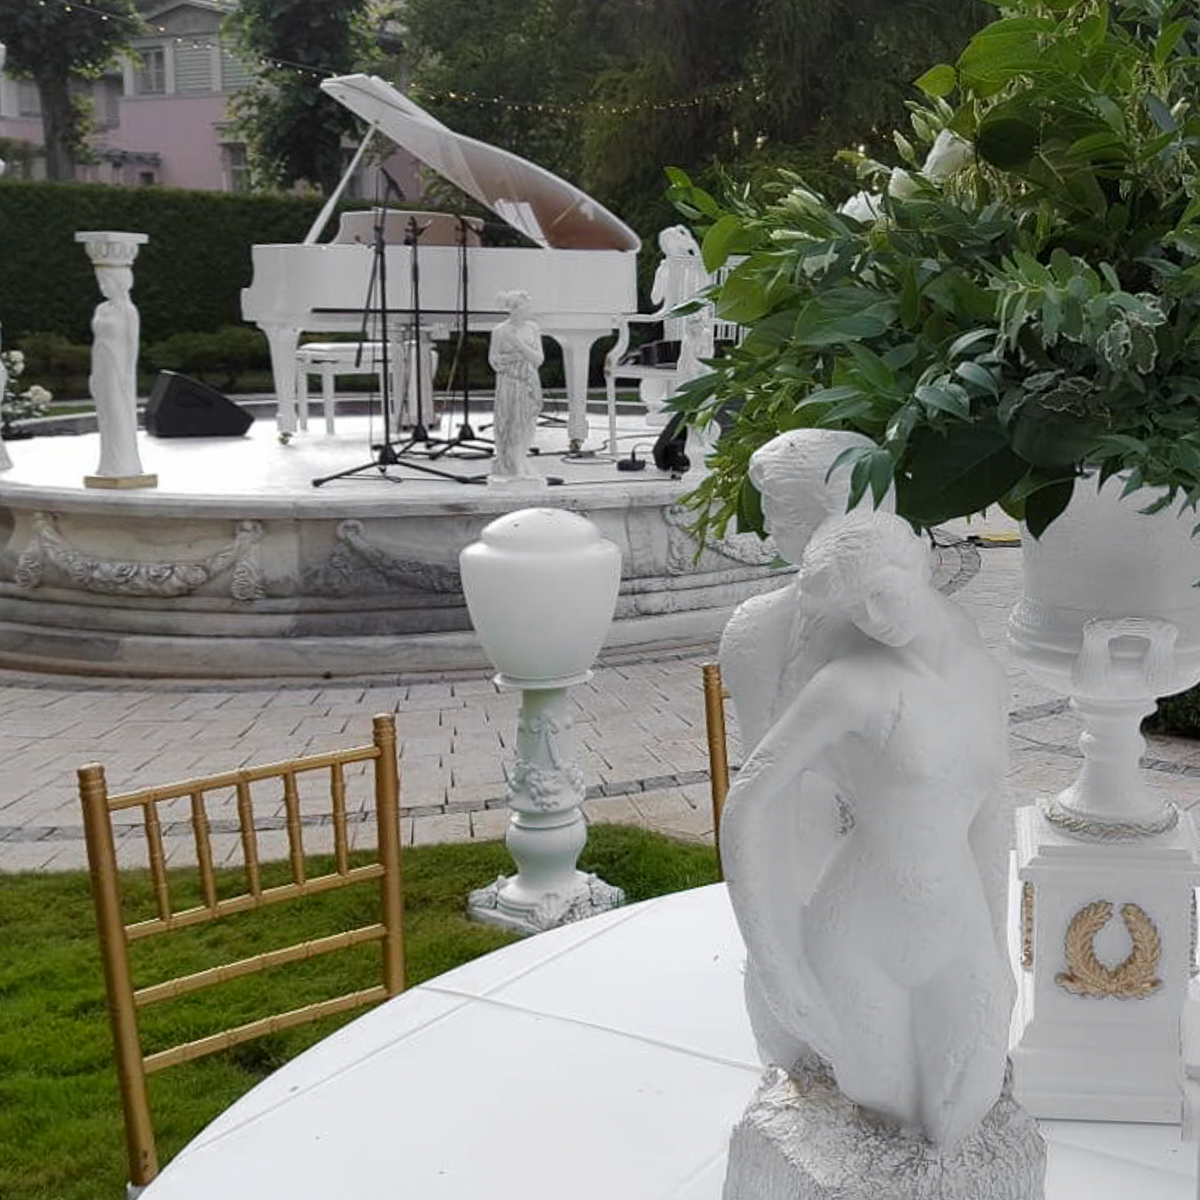 Свадьба в Юрмале скульптуры и белый рояль на фонтане 7skyevent 